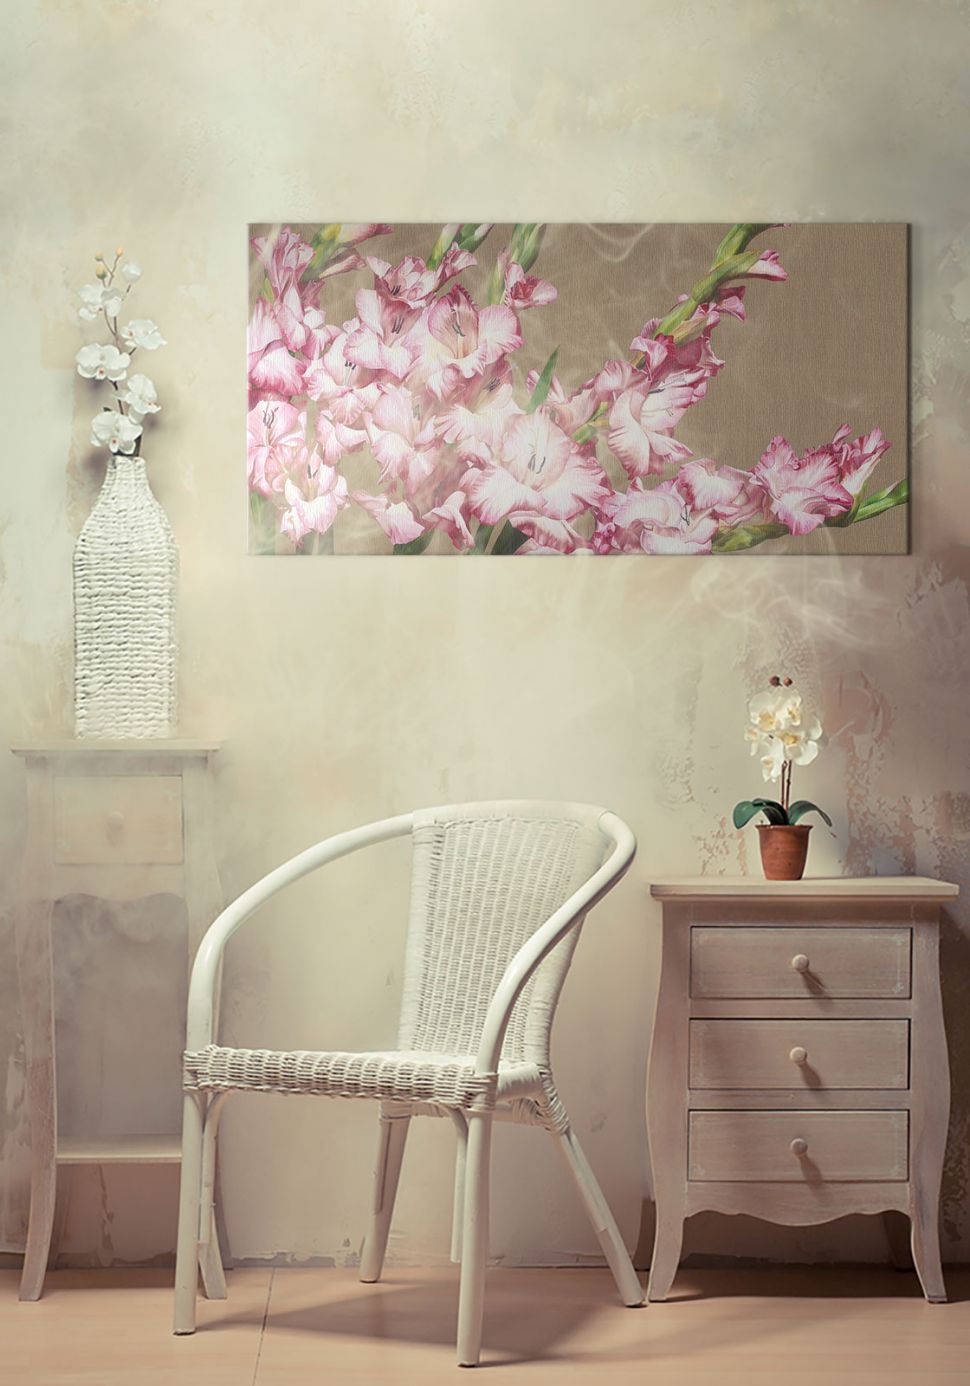 Obraz wiszący w pokoju na ścianie przedstawiający kwiaty mieczyki